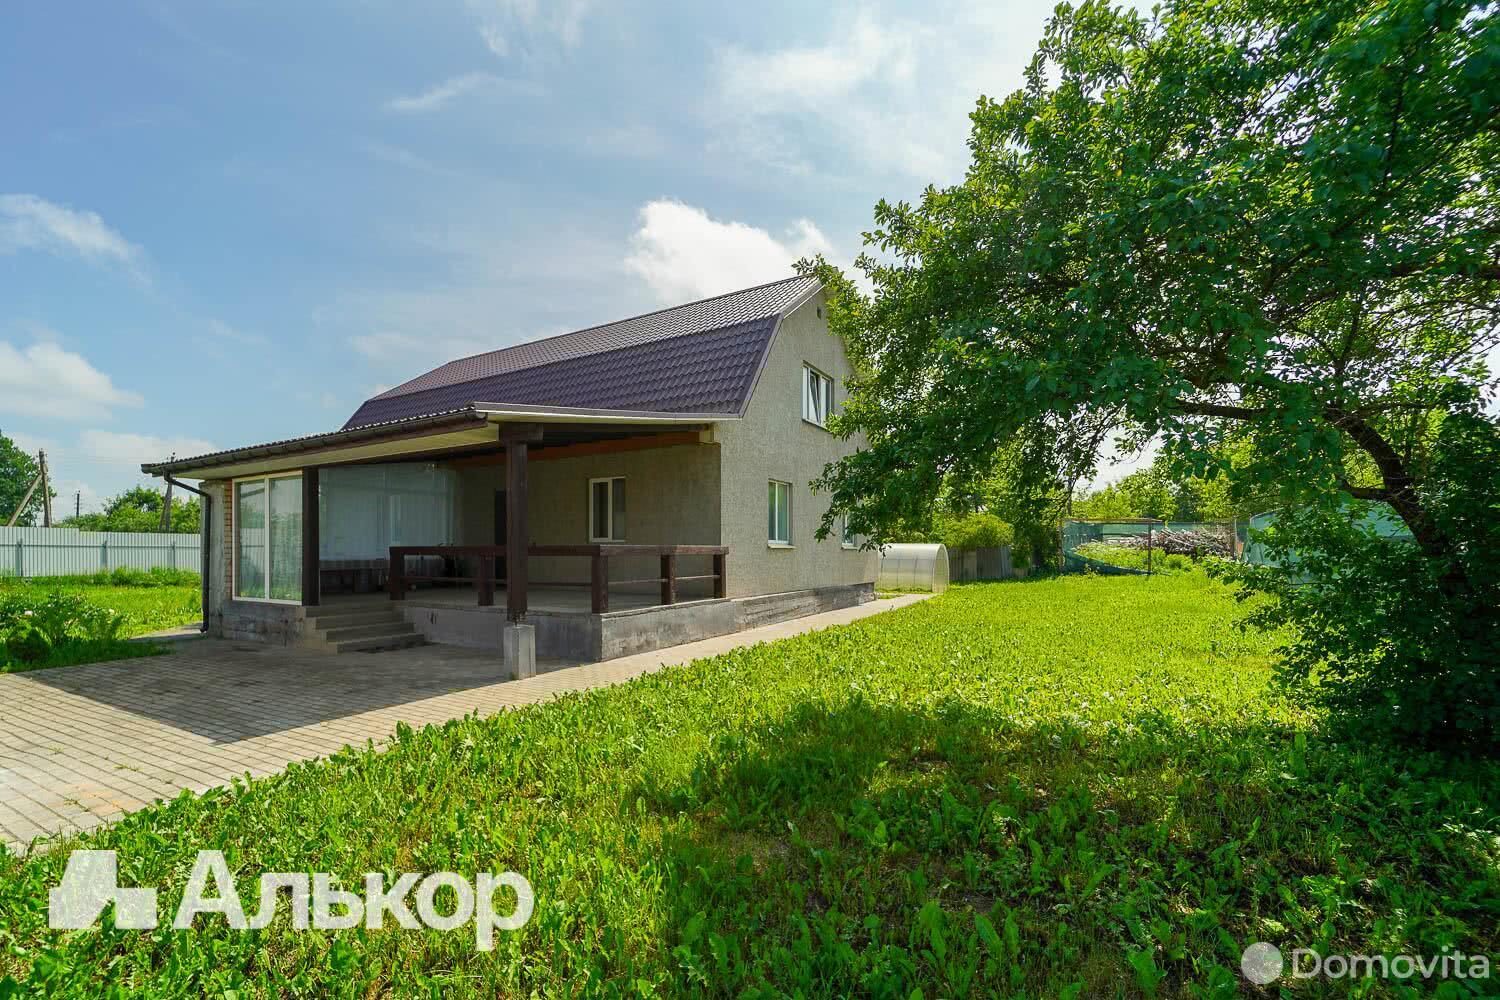 Продать 2-этажный дом в Смолевичах, Минская область ул. Песчаная, д. 3, 88000USD, код 637081 - фото 1